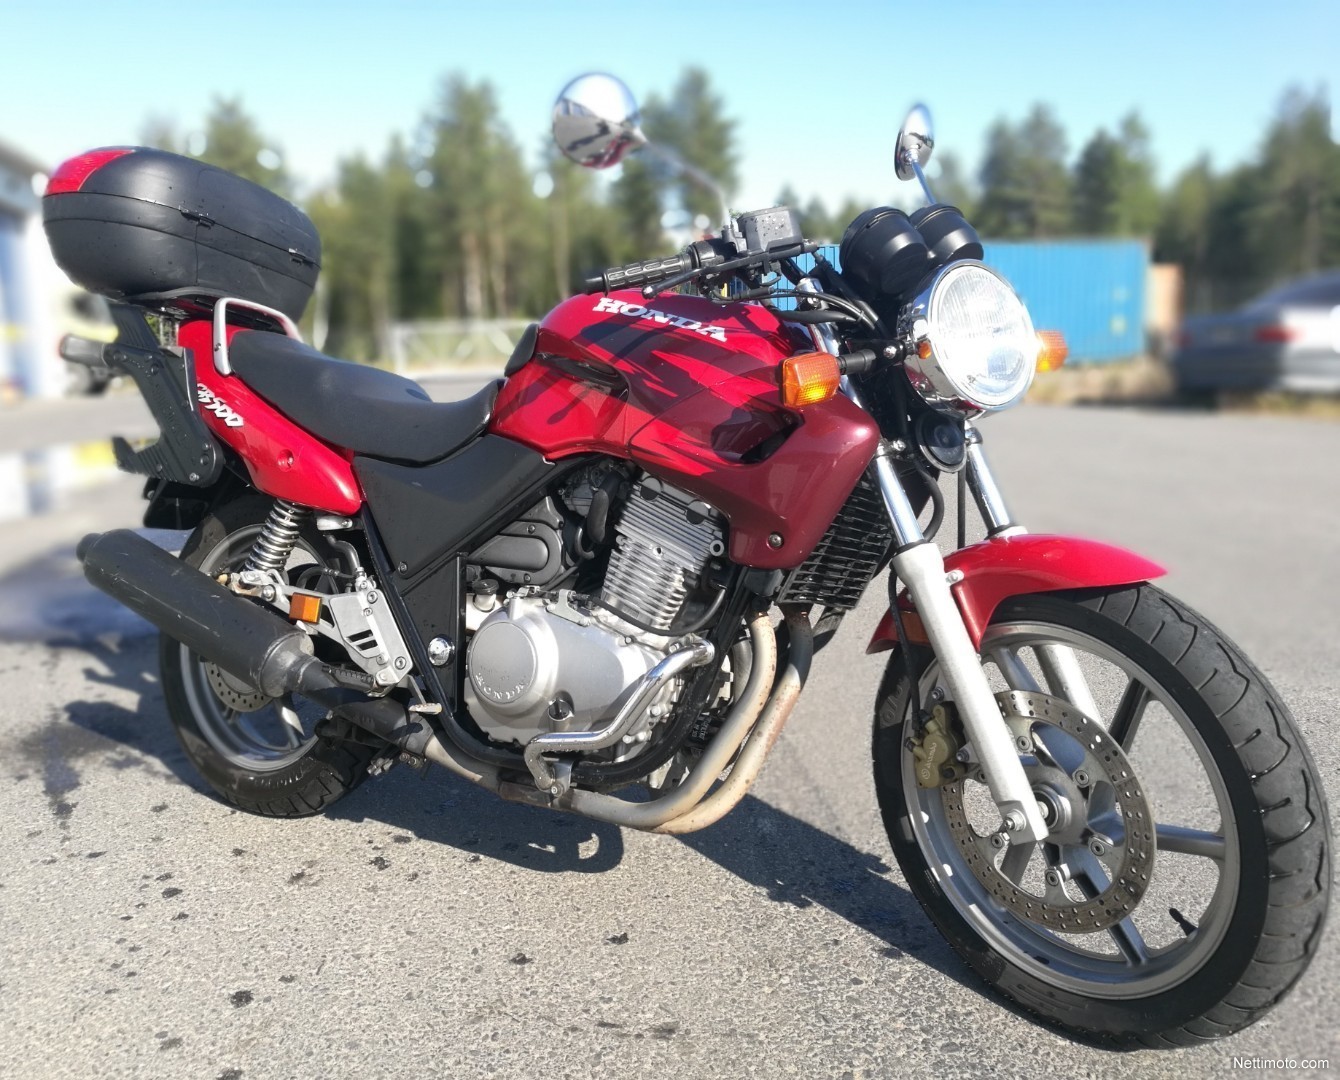 Honda CB 500 500 cm³ 1999 Oulu Moottoripyörä Nettimoto